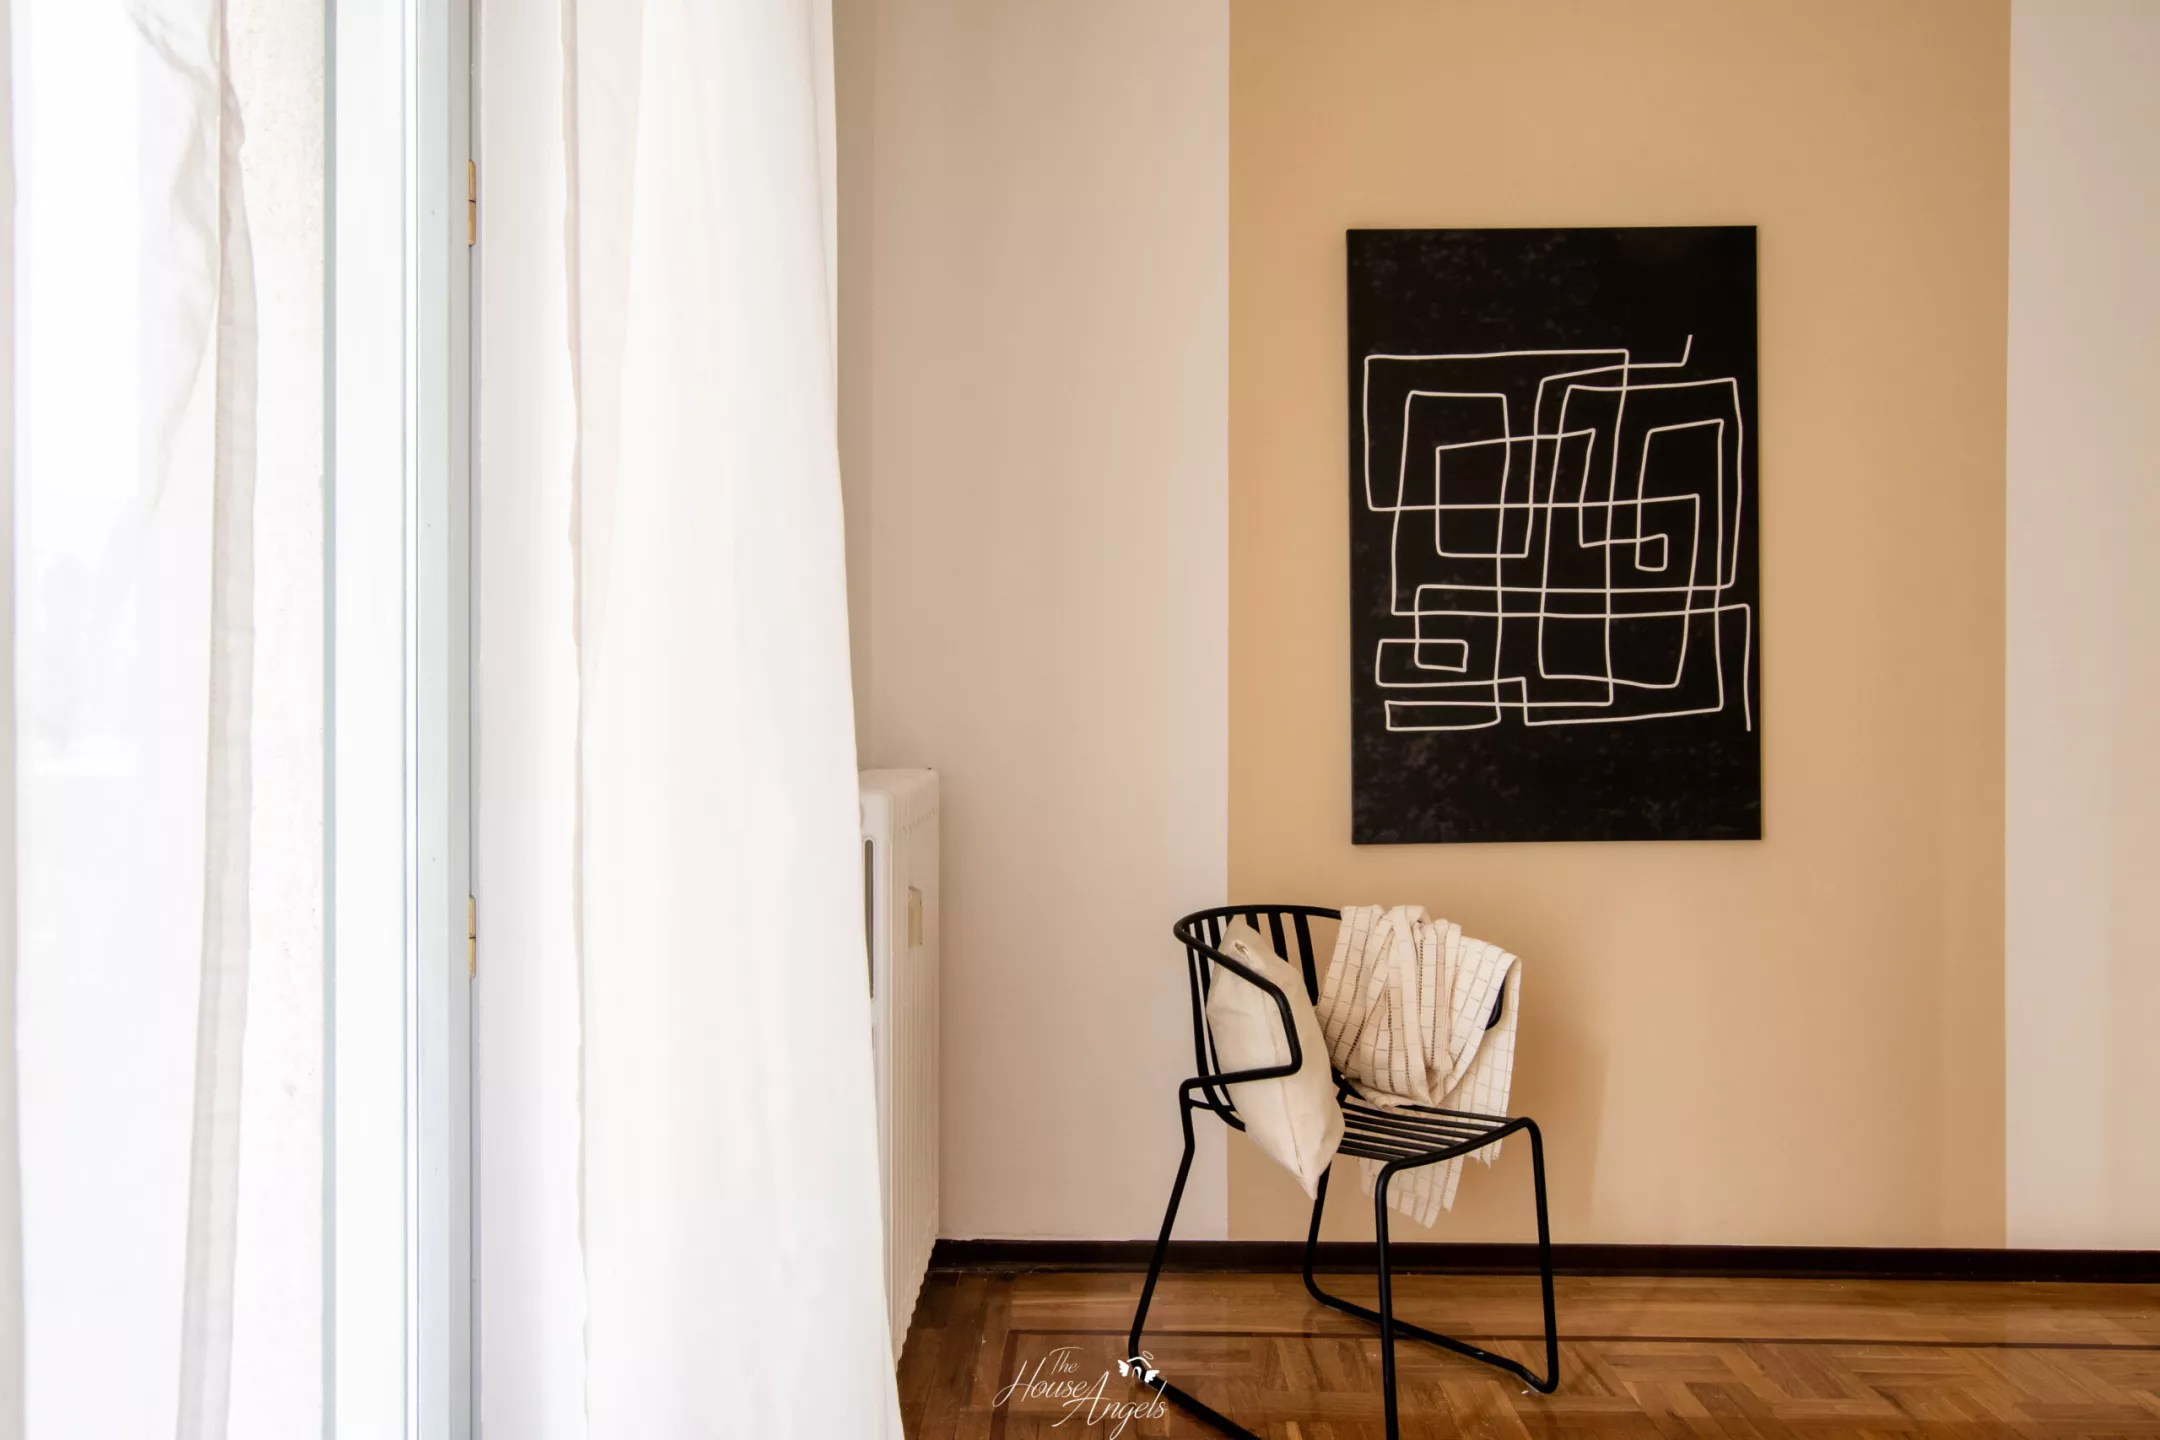 Immagine per Appartamento in vendita a Cuneo via Via Antonio Bassignano 15